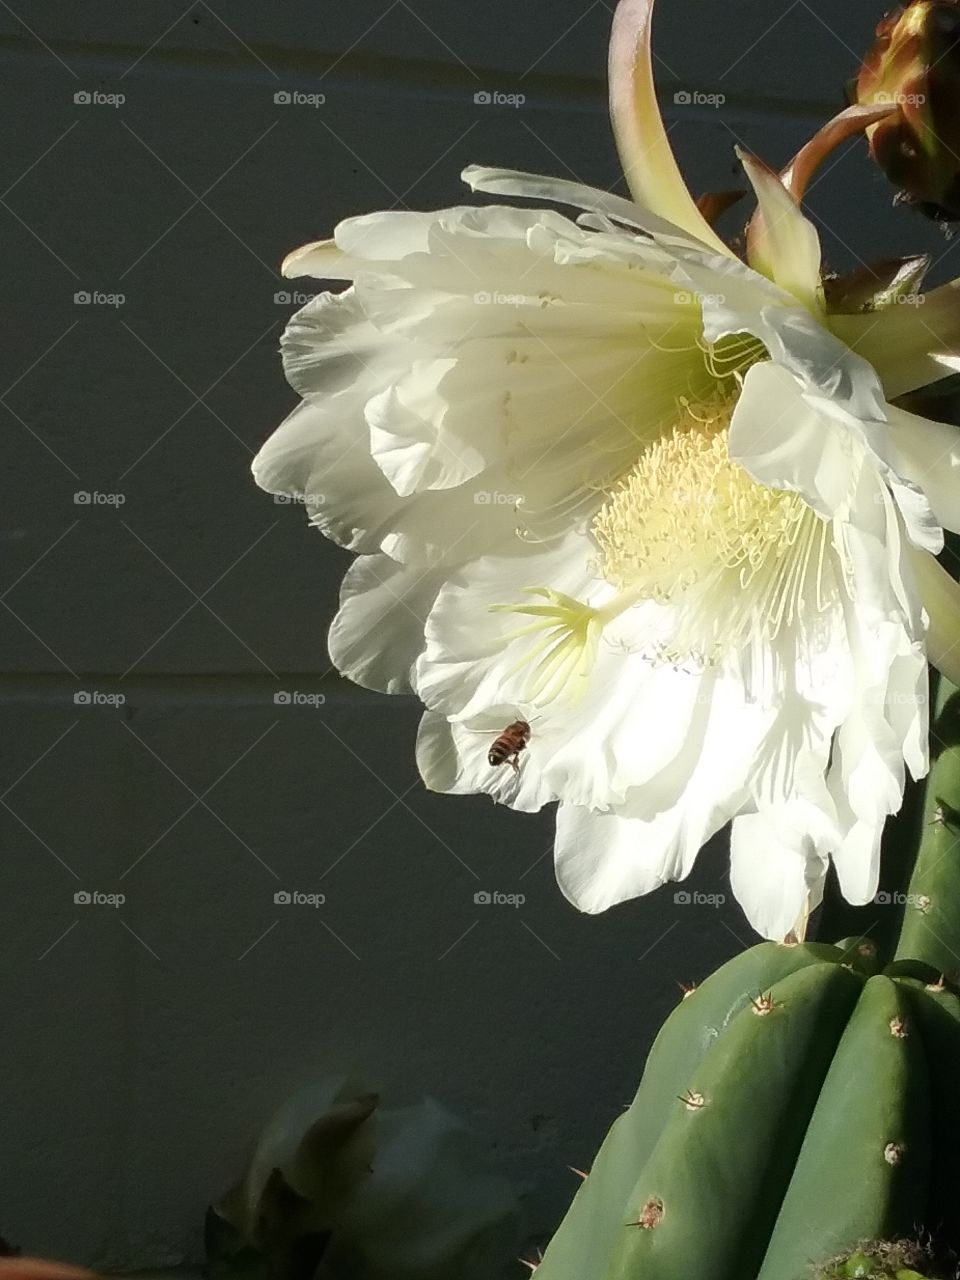 Trichocereus flower versus the bee